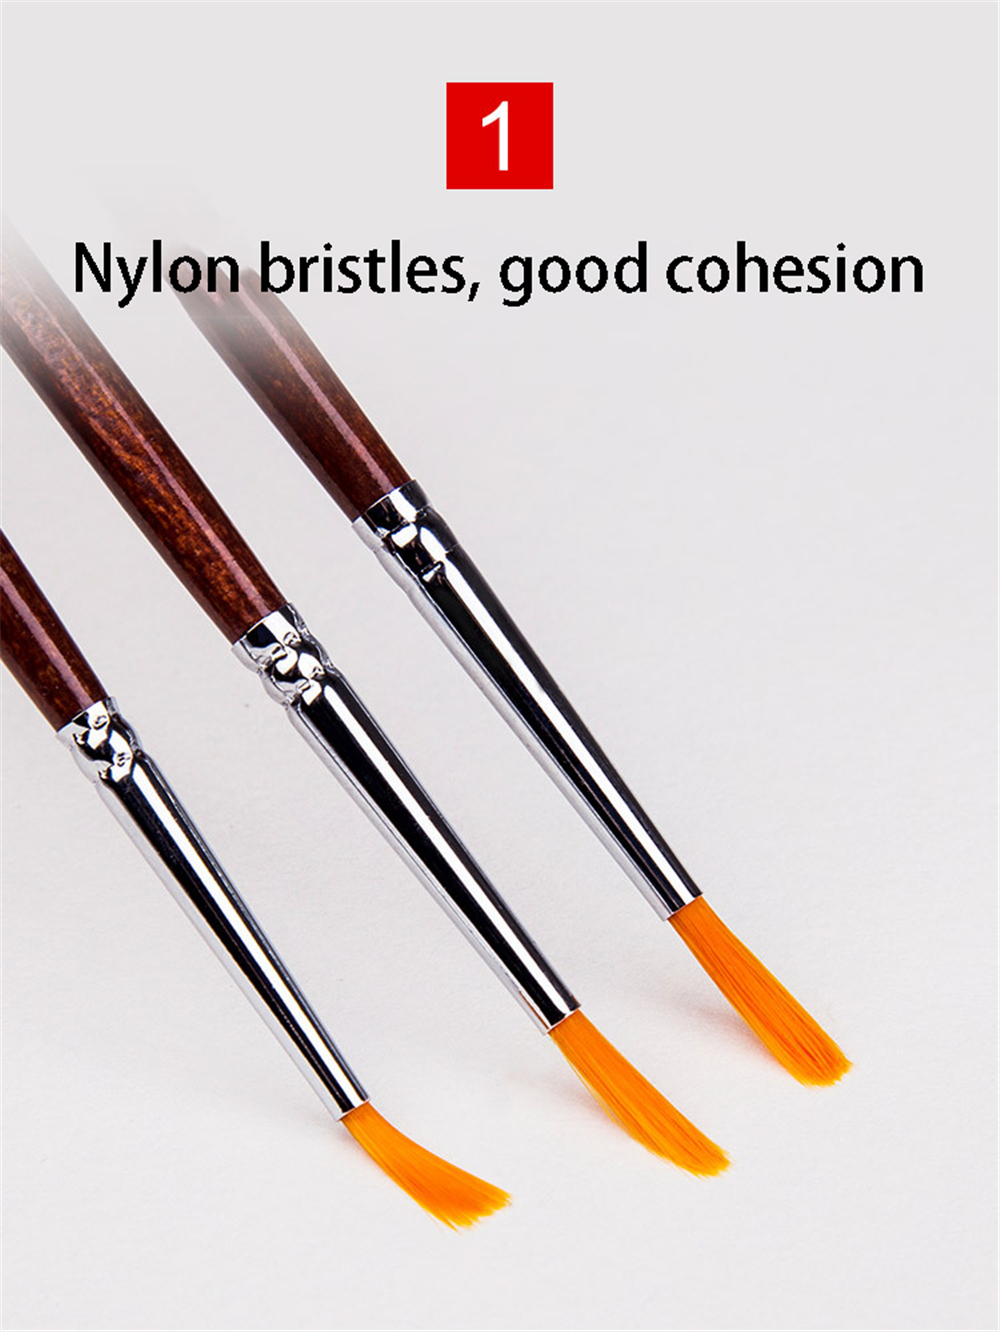 Transon-700-Painting-Brush-7pcs-Set-Watercolor-Gouache-Line-Drawing-Pen-Nylon-Nib-7-Specs-Brush-Set--1742991-7